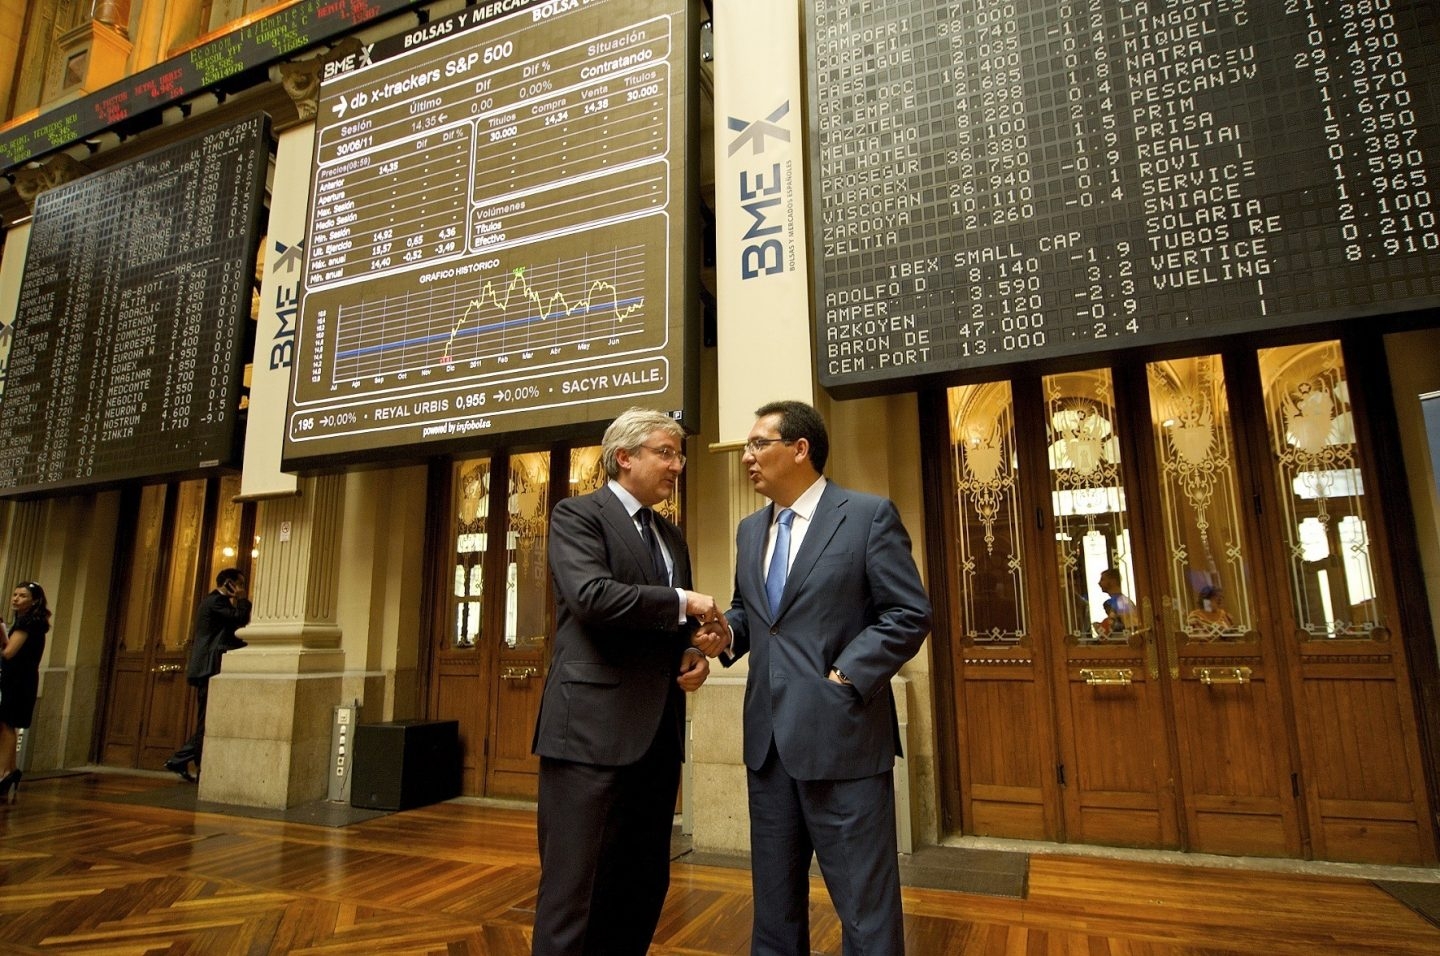 Enrique Goñi y Antonio Pulido, ex copresidentes de Banca Cívica, en la Bolsa de Madrid.